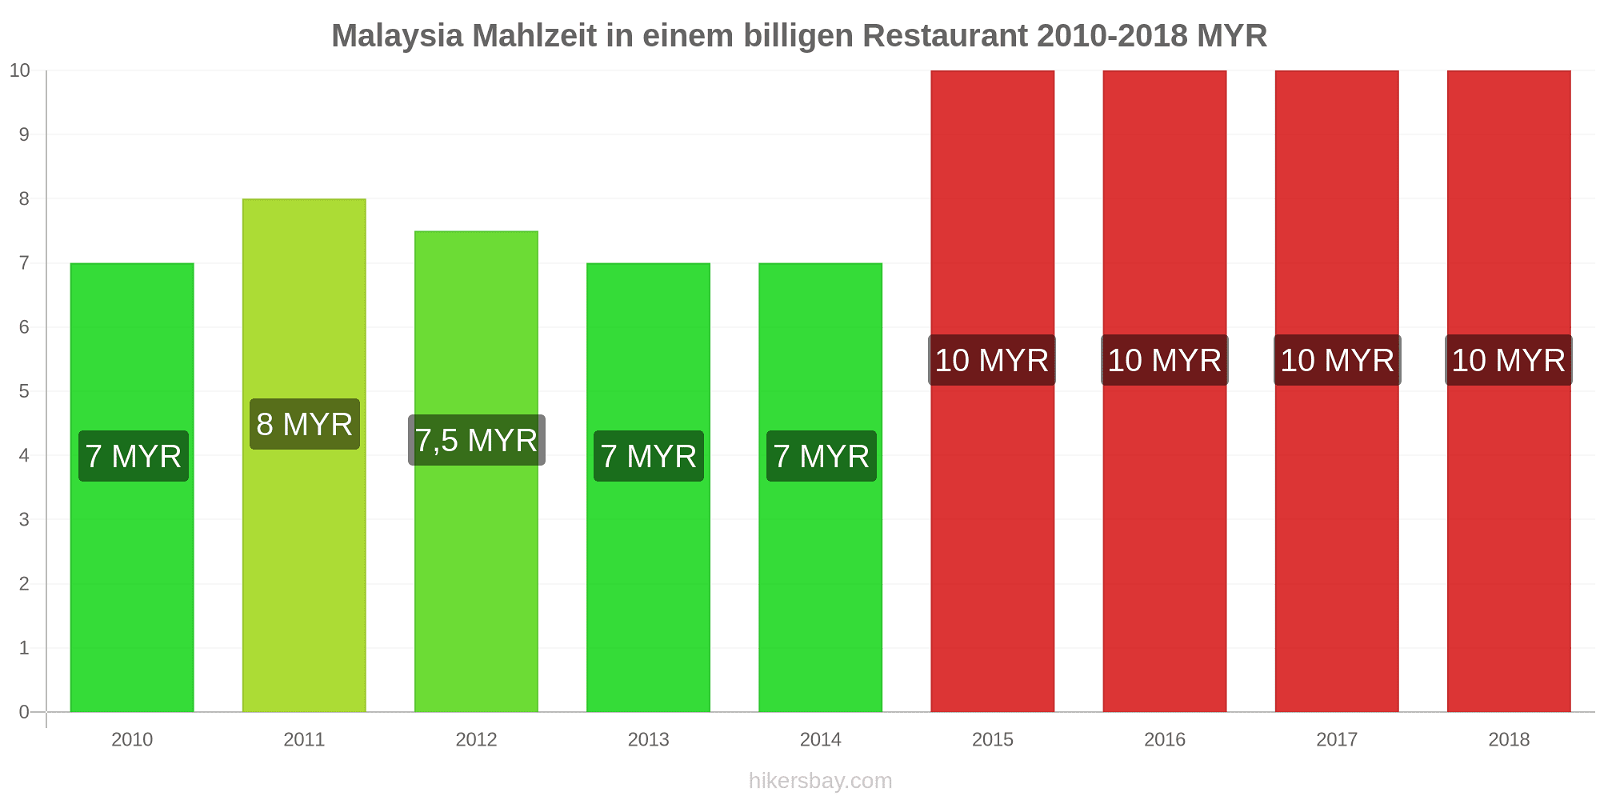 Malaysia Preisänderungen Mahlzeit in einem billigen Restaurant hikersbay.com